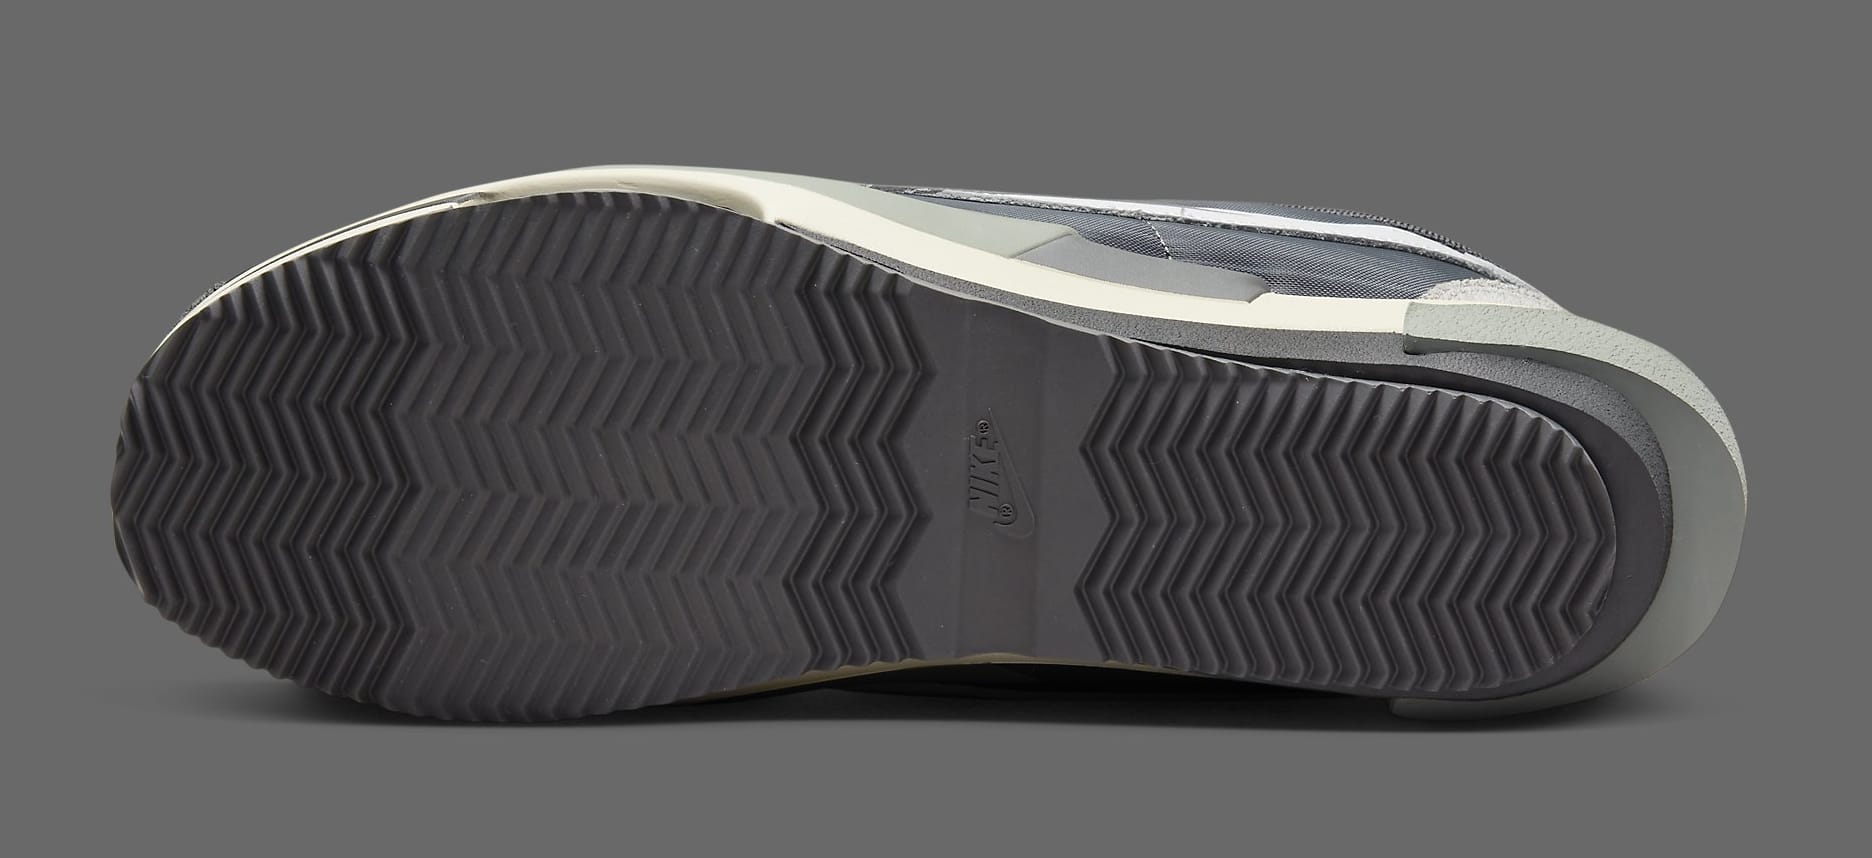 Sacai x Nike Zoom Cortez 'Iron Grey' DQ0581 001 Outsole